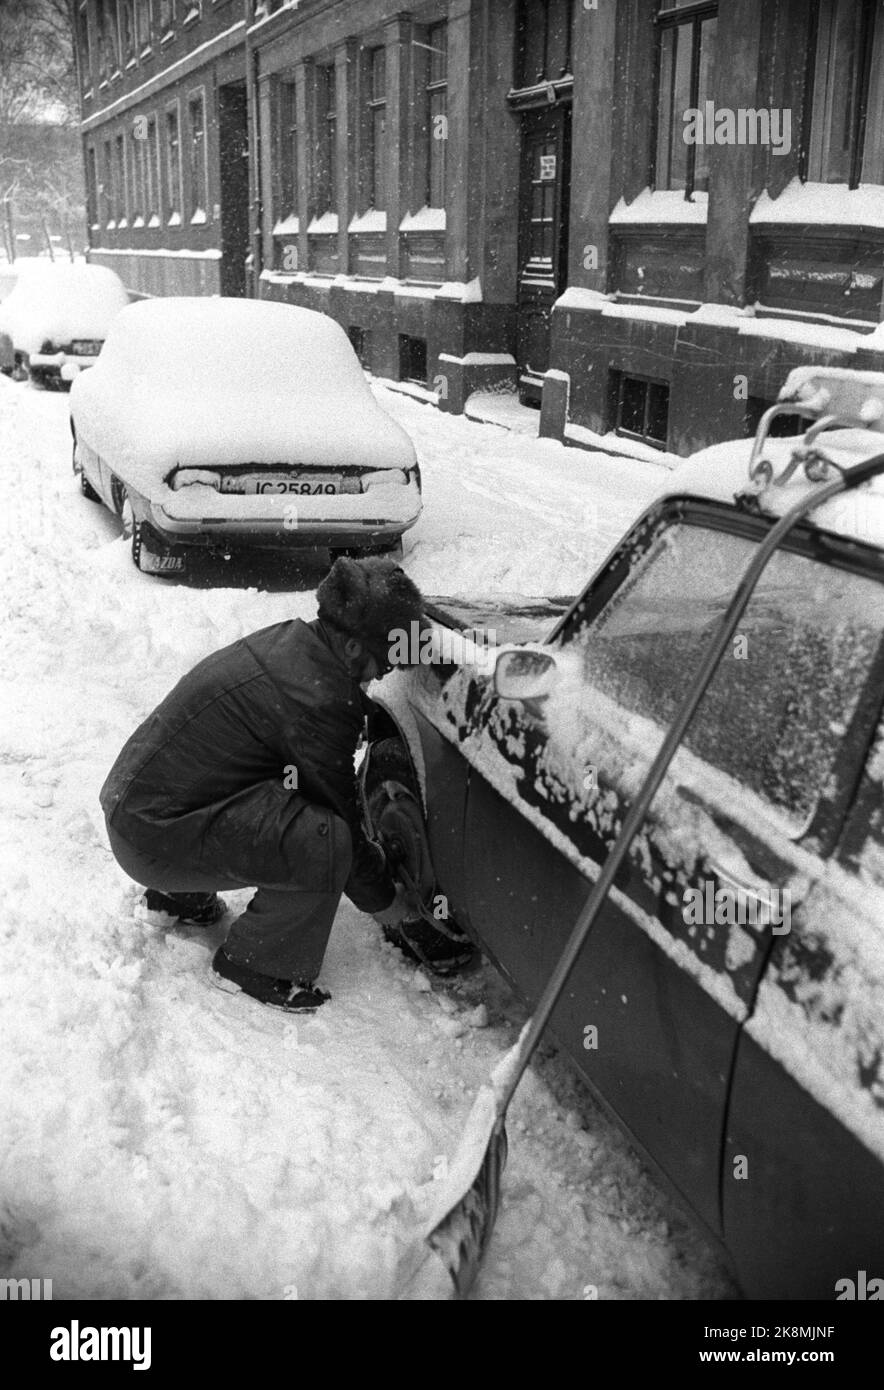 Oslo 24. November 1977. Großer Schneefall verursachte Probleme im Morgenverkehr in Oslo. Hier ist ein Mann, der sich greifende Decken/Ketten anzieht. Foto; Erik Thorberg / NTB / NTB Stockfoto